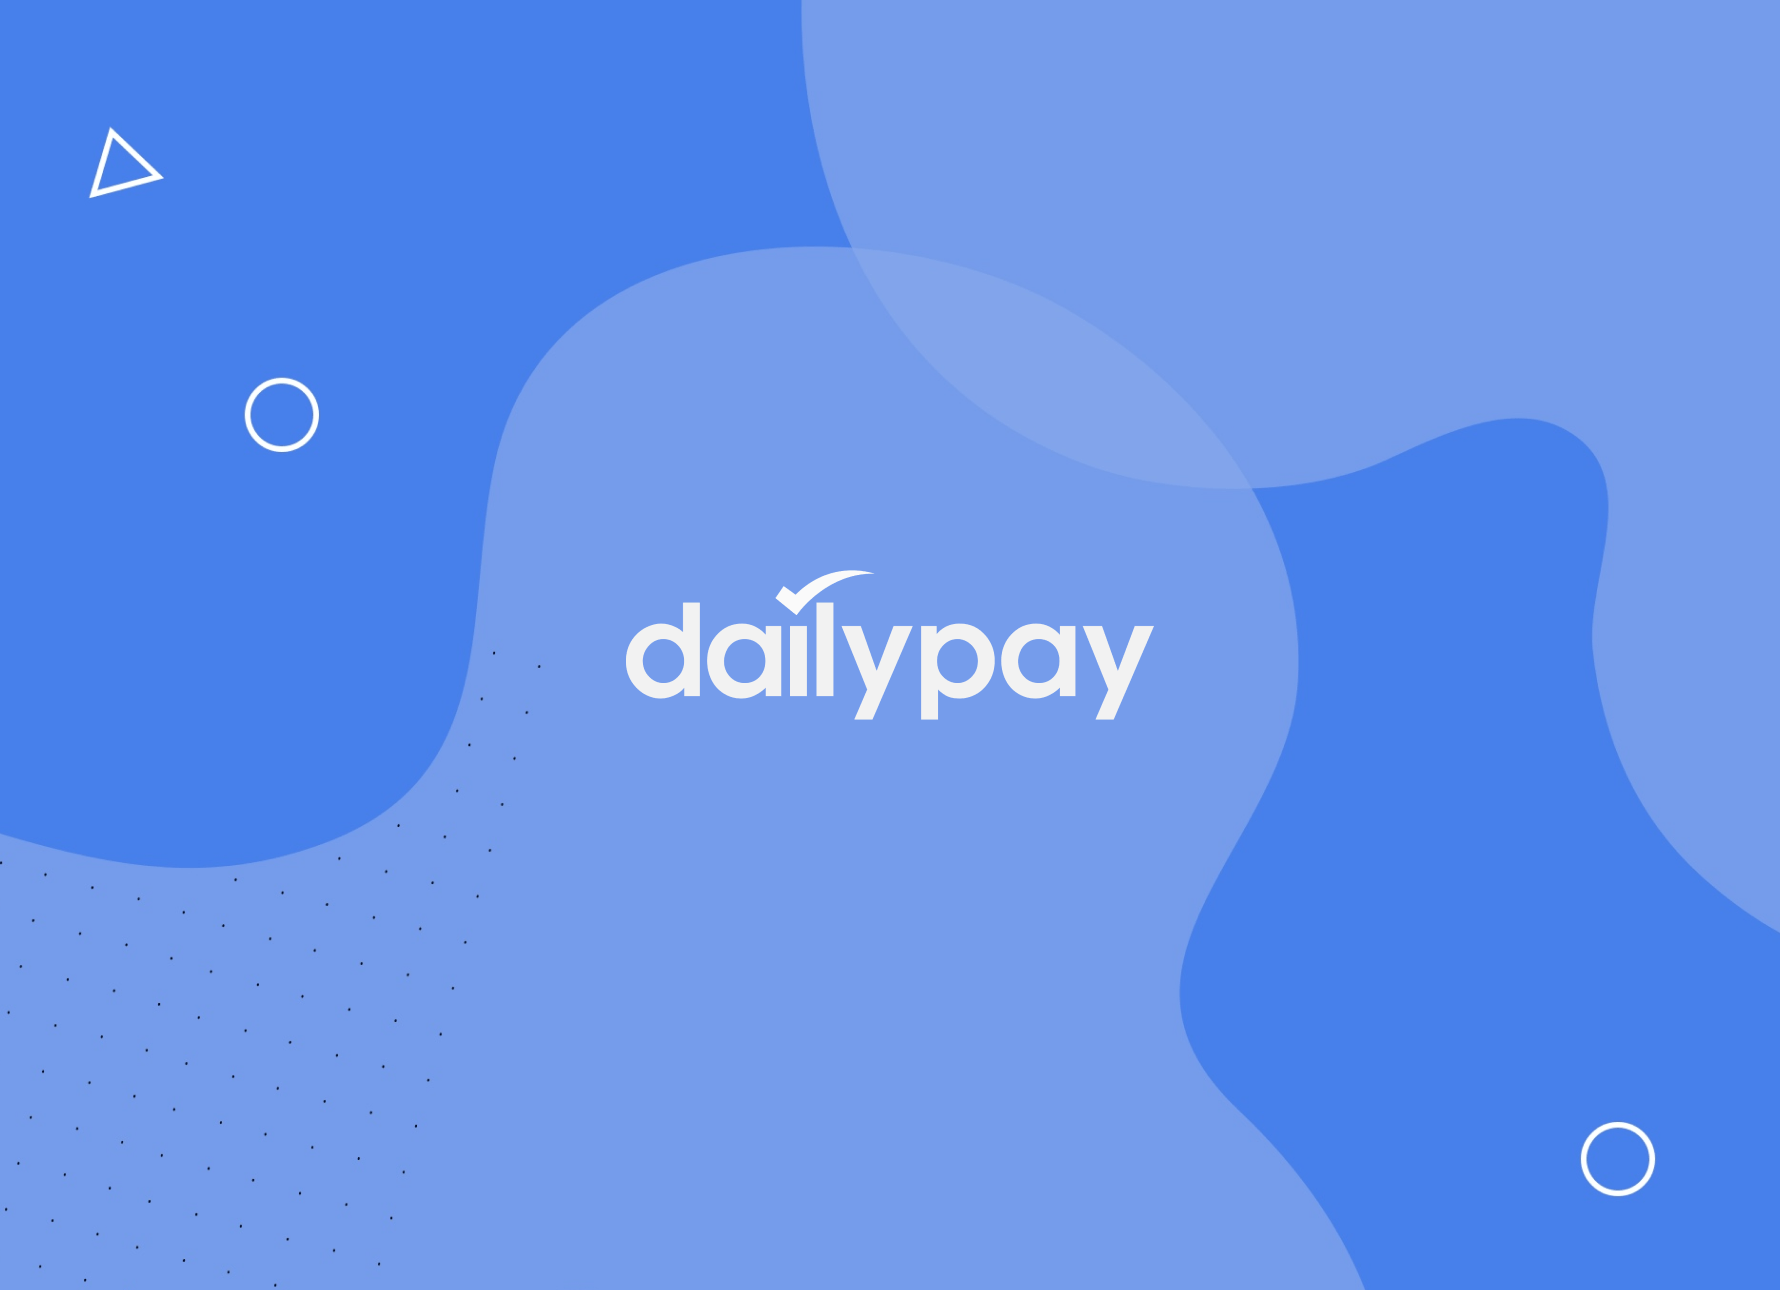 DailyPay logo